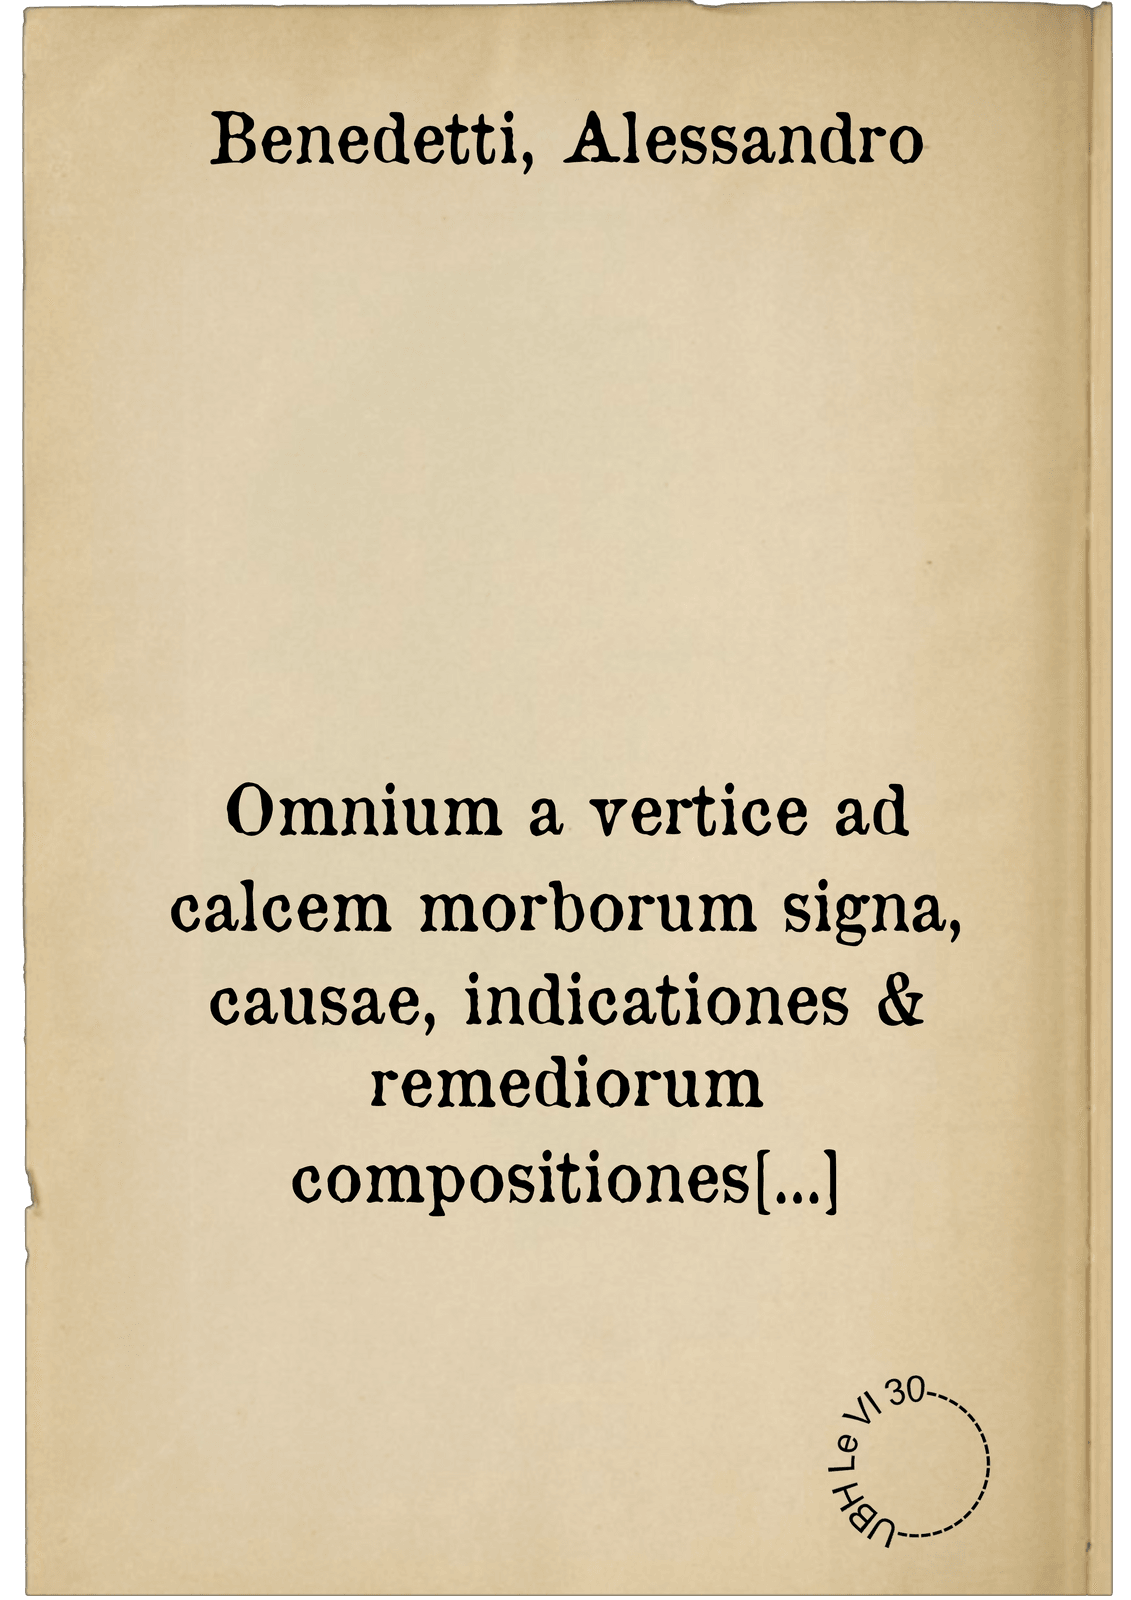 Omnium a vertice ad calcem morborum signa, causae, indicationes & remediorum compositiones utendique rationes, generatim libris XXX conscripta